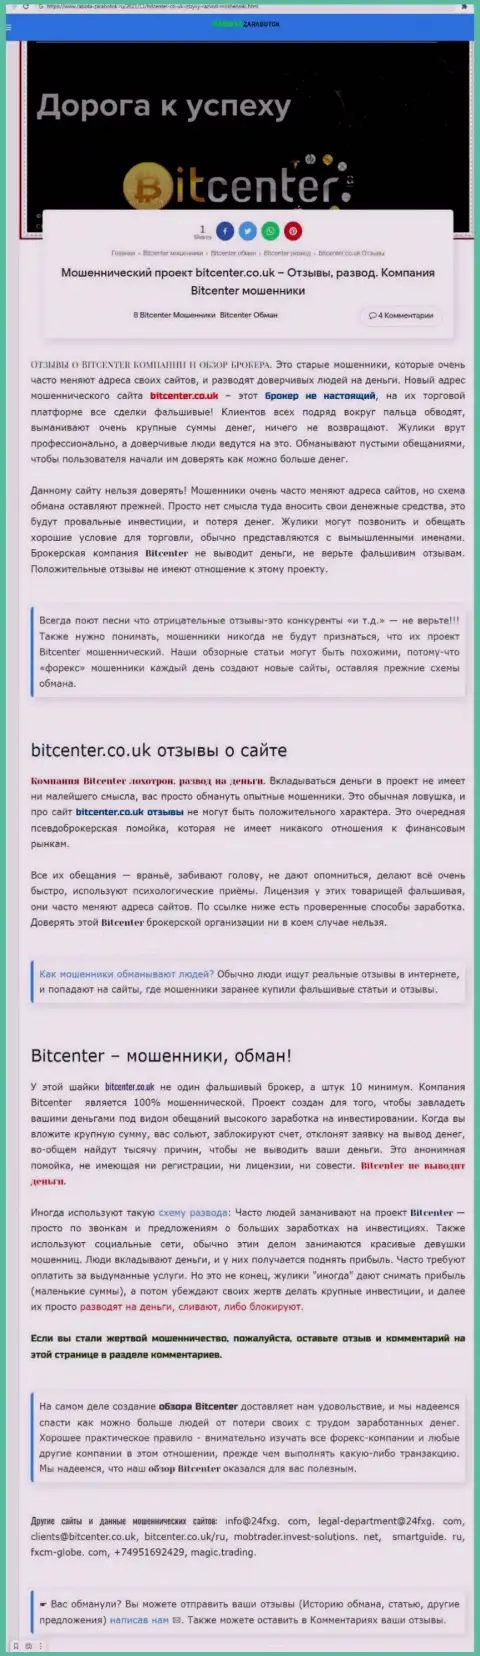 Bit Center - это организация, совместное взаимодействие с которой доставляет только убытки (обзор деяний)